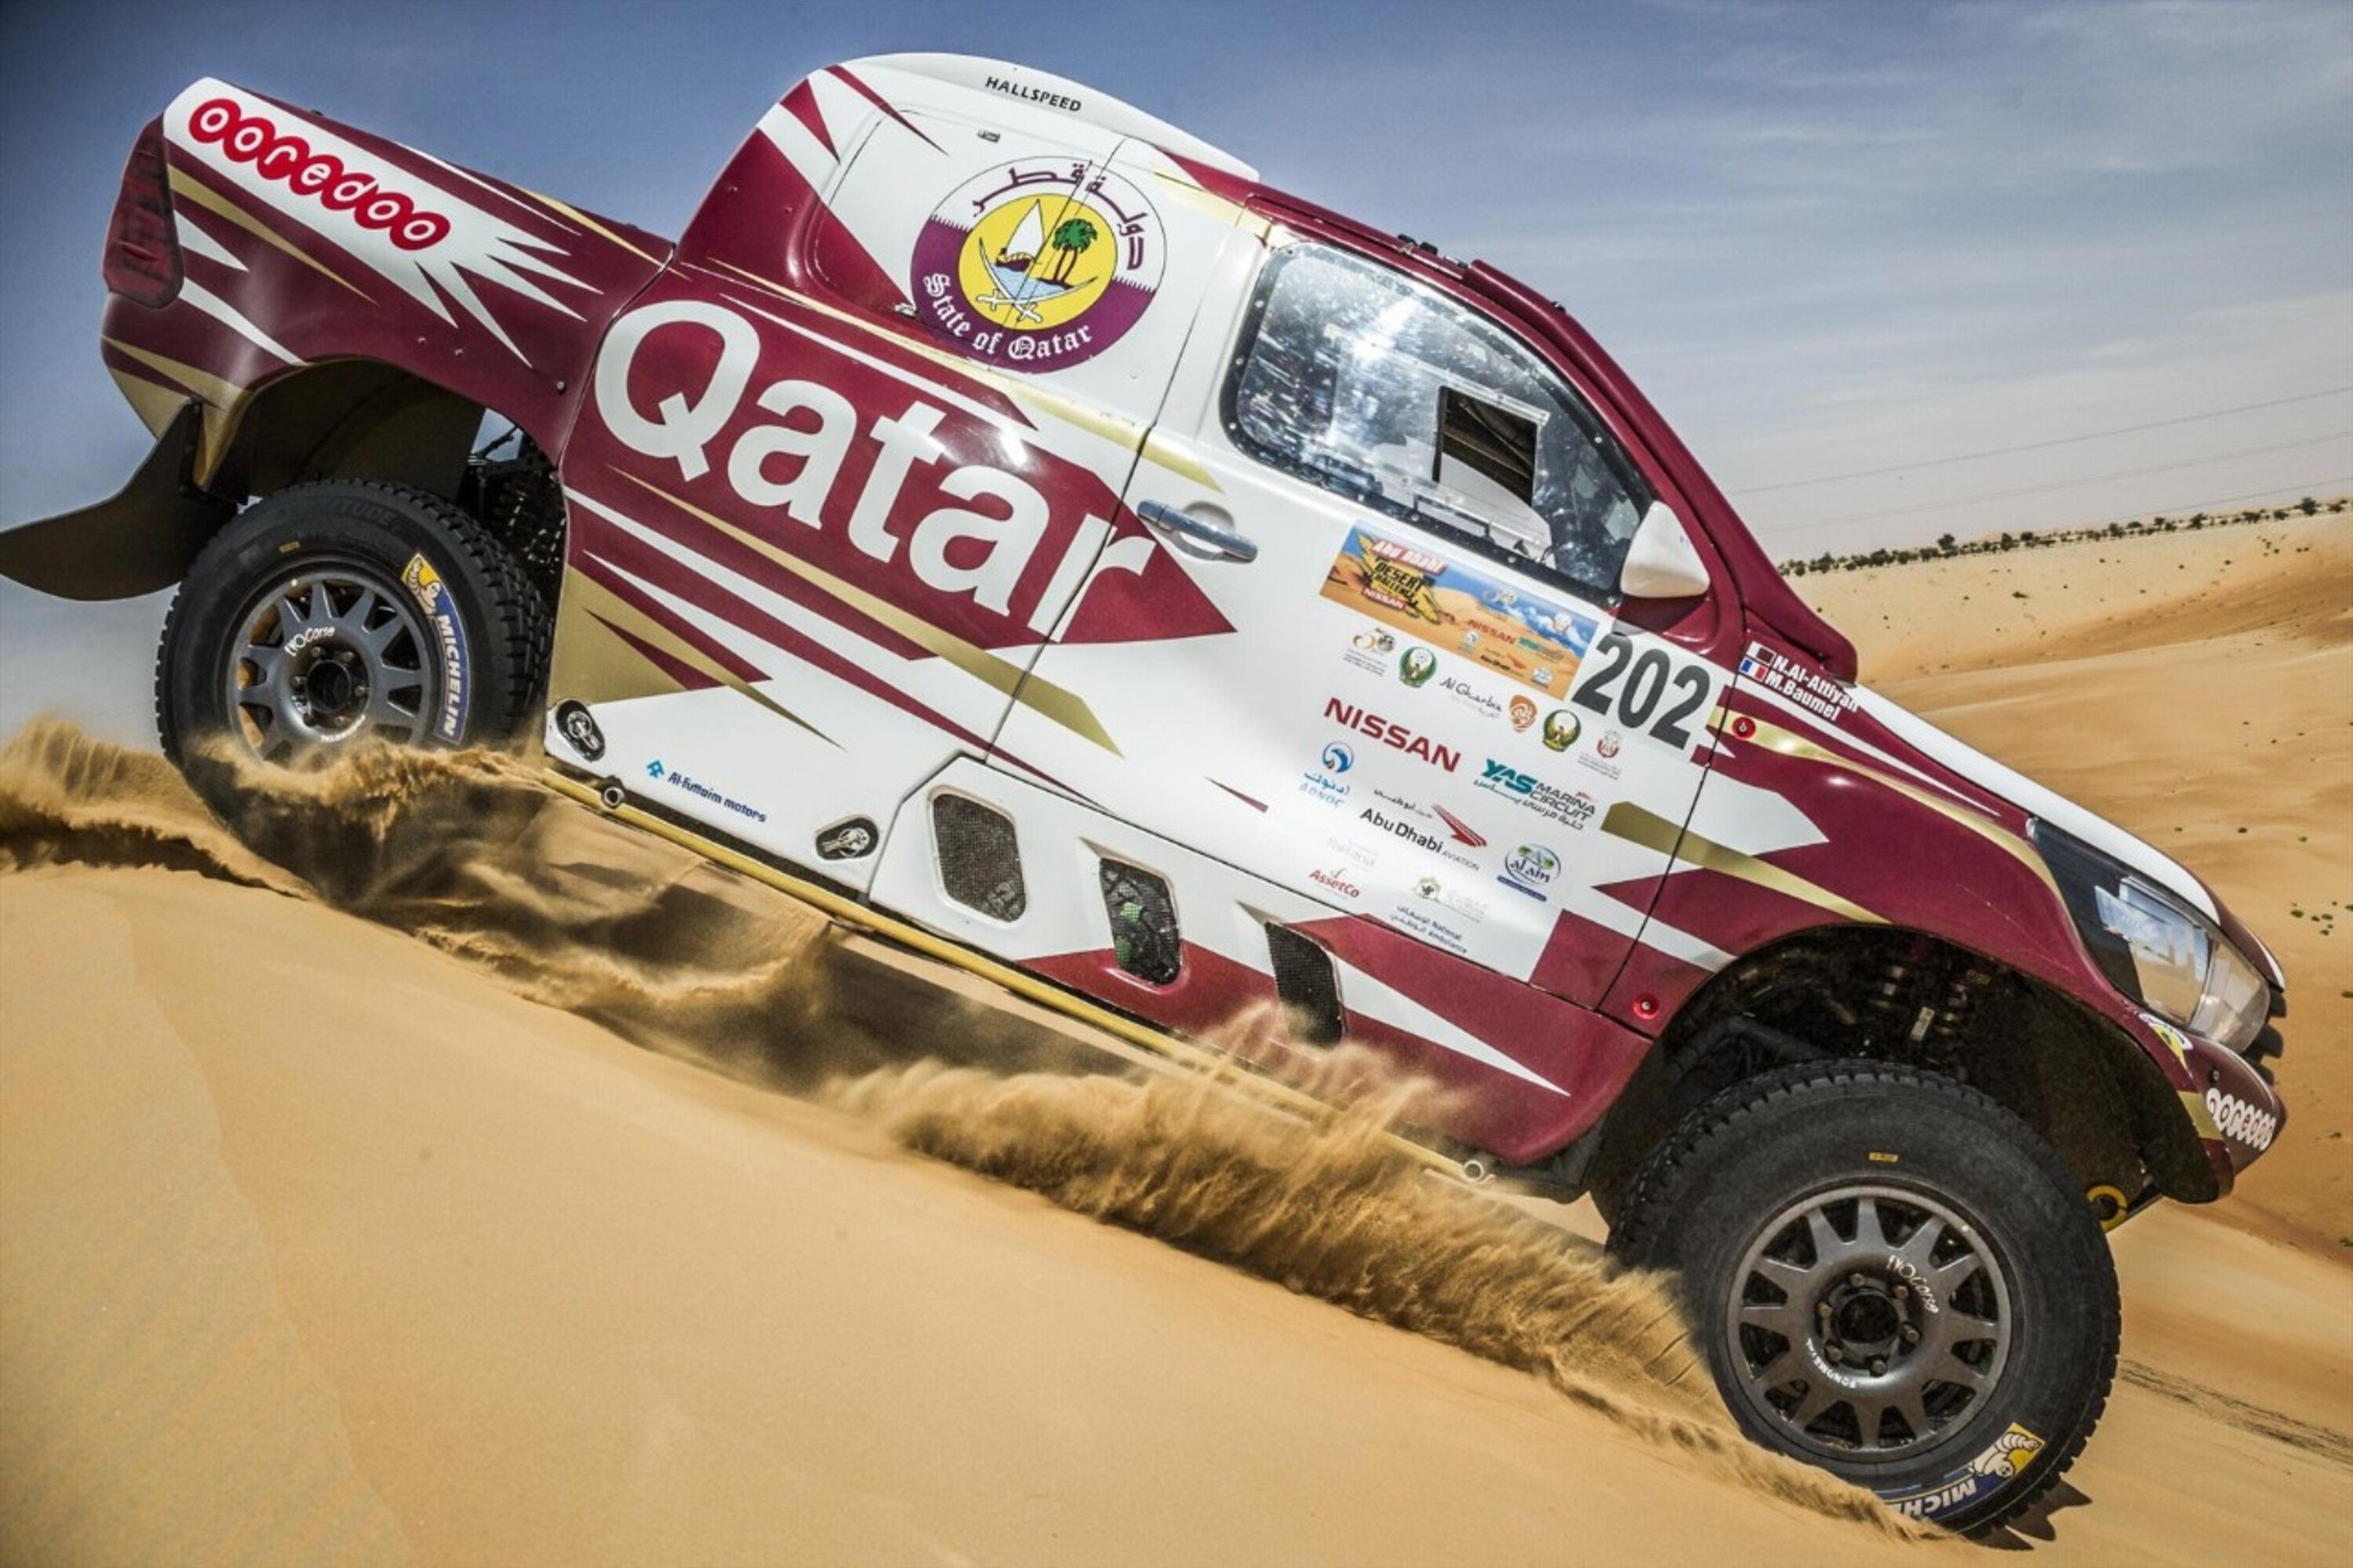 Pre Dakar 2017, Marocco. Al Attiyah-Baumel, 6 su 6. Attenti a quei 2!